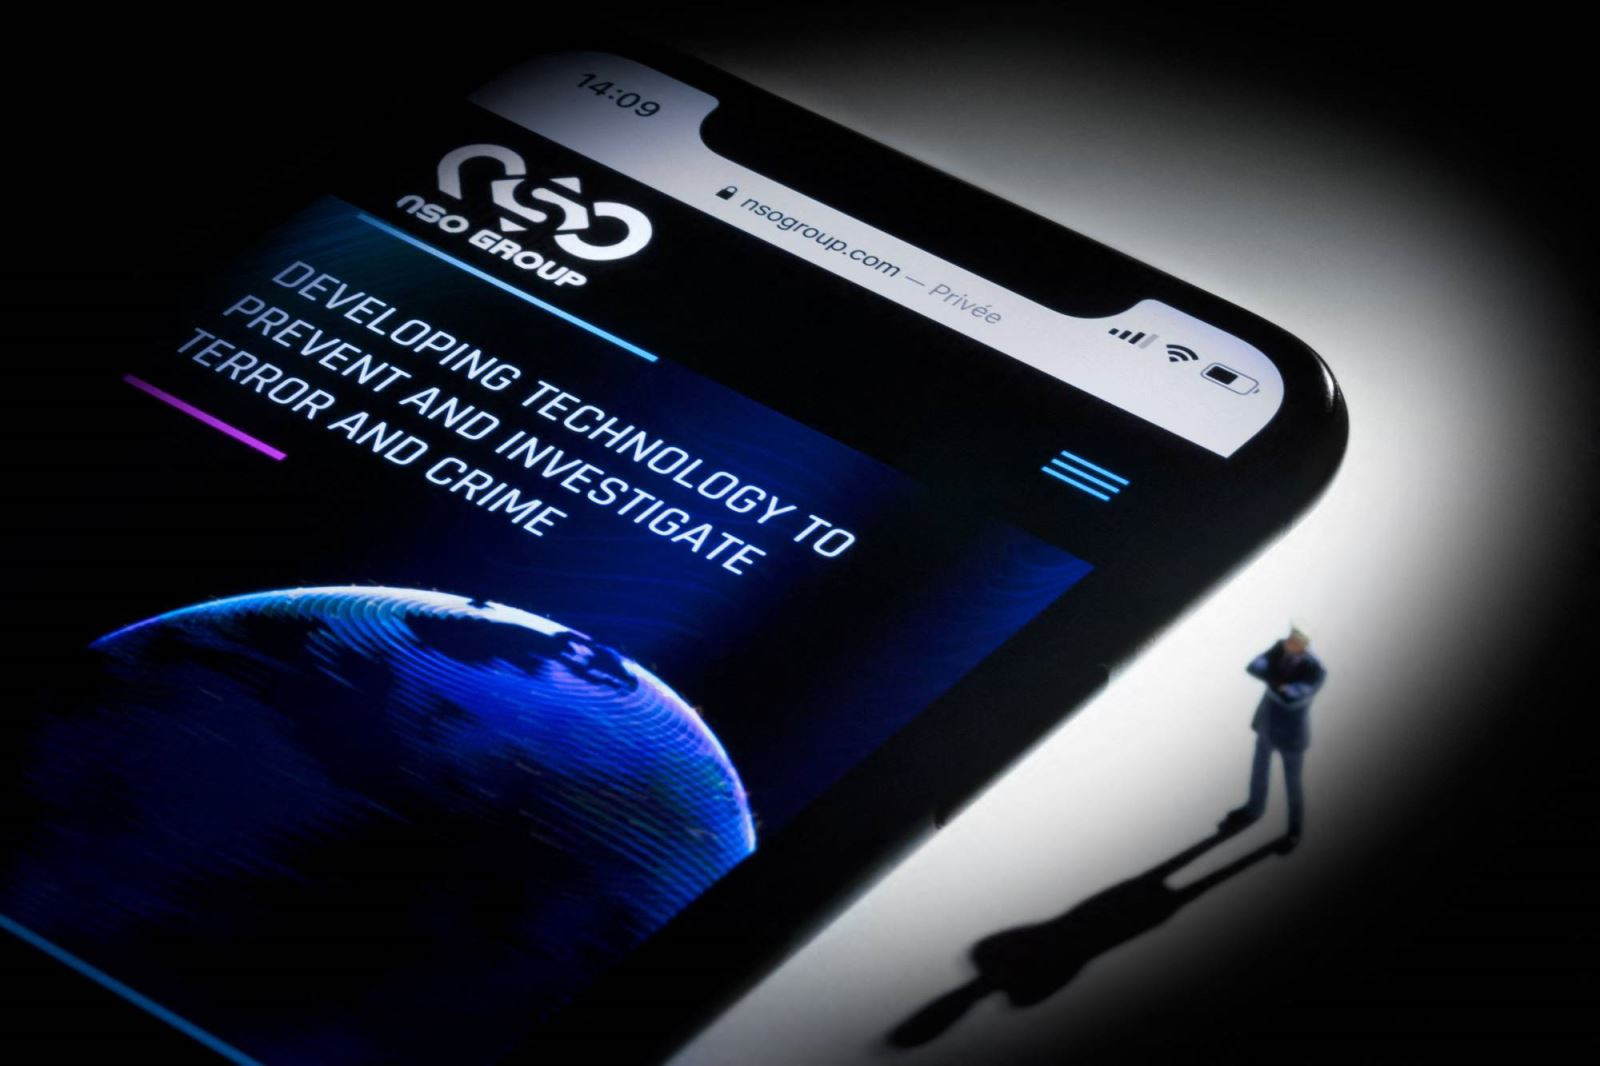 Hình ảnh mô phỏng một chiếc điện thoại thông minh với trang web của công ty NSO hiện trên màn hình. Ảnh: AFP